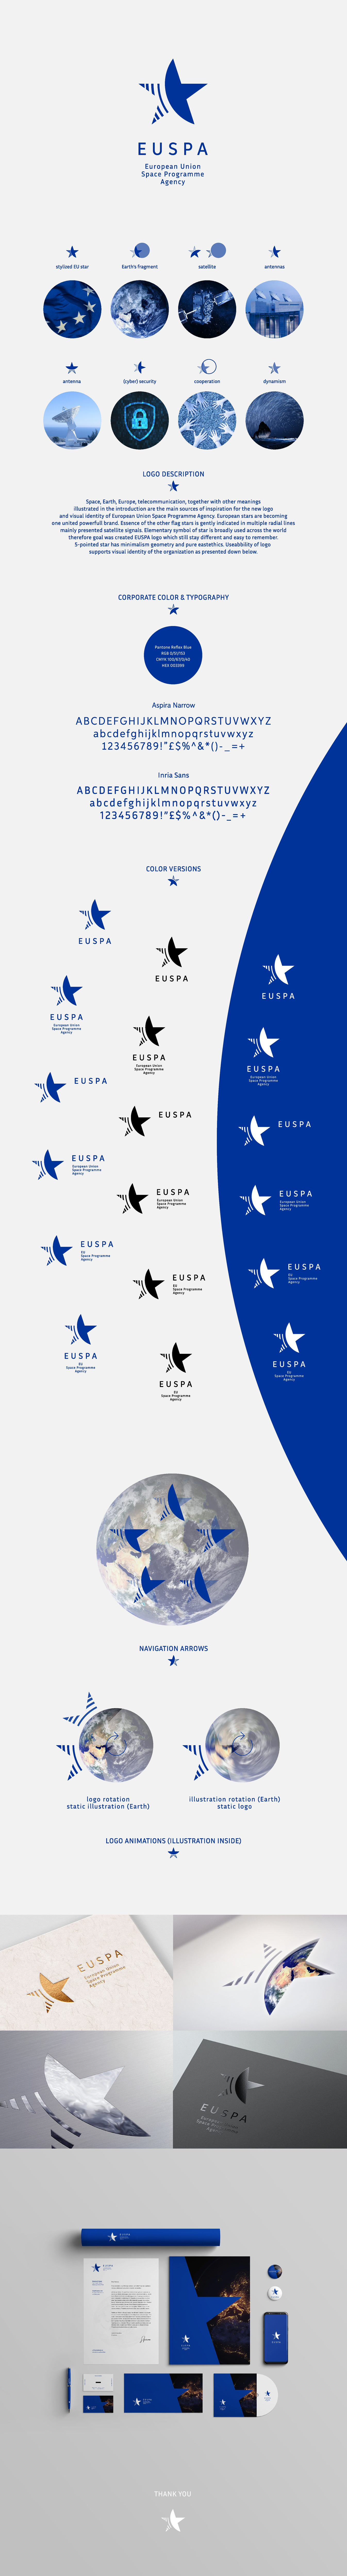 EUSPA - súťažný návrh loga „A“